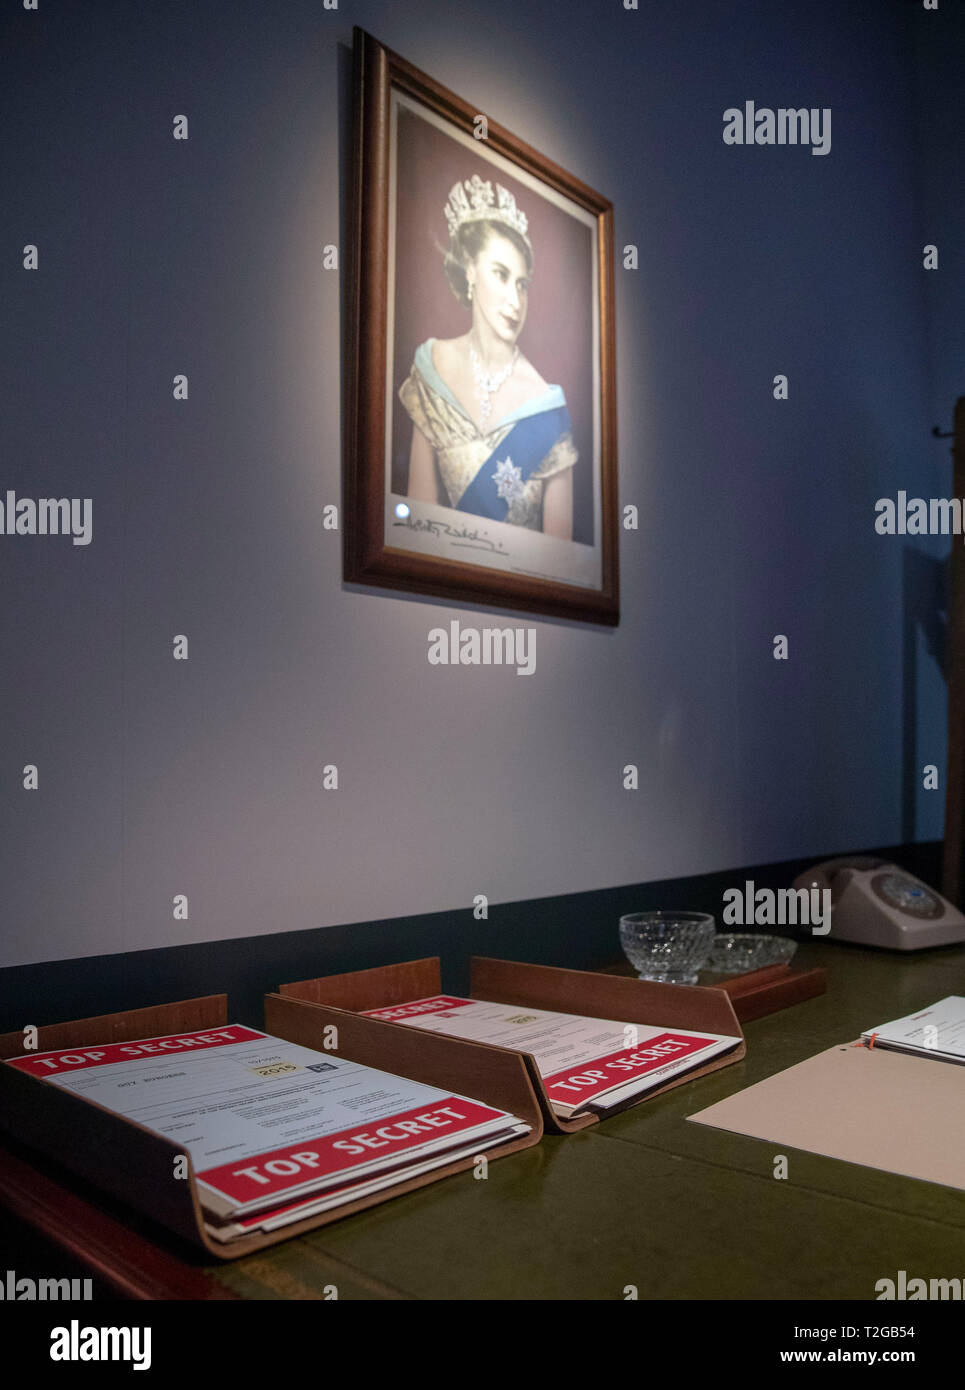 Una vista generale di un ritratto della regina Elisabetta II appeso sopra una scrivania studiando il Cambridge spie durante l'anteprima dell'Archivio Nazionale nuova mostra, proteggere e sopravvivere: della Gran Bretagna la guerra fredda ha rivelato, presso gli archivi nazionali, Richmond. Foto Stock